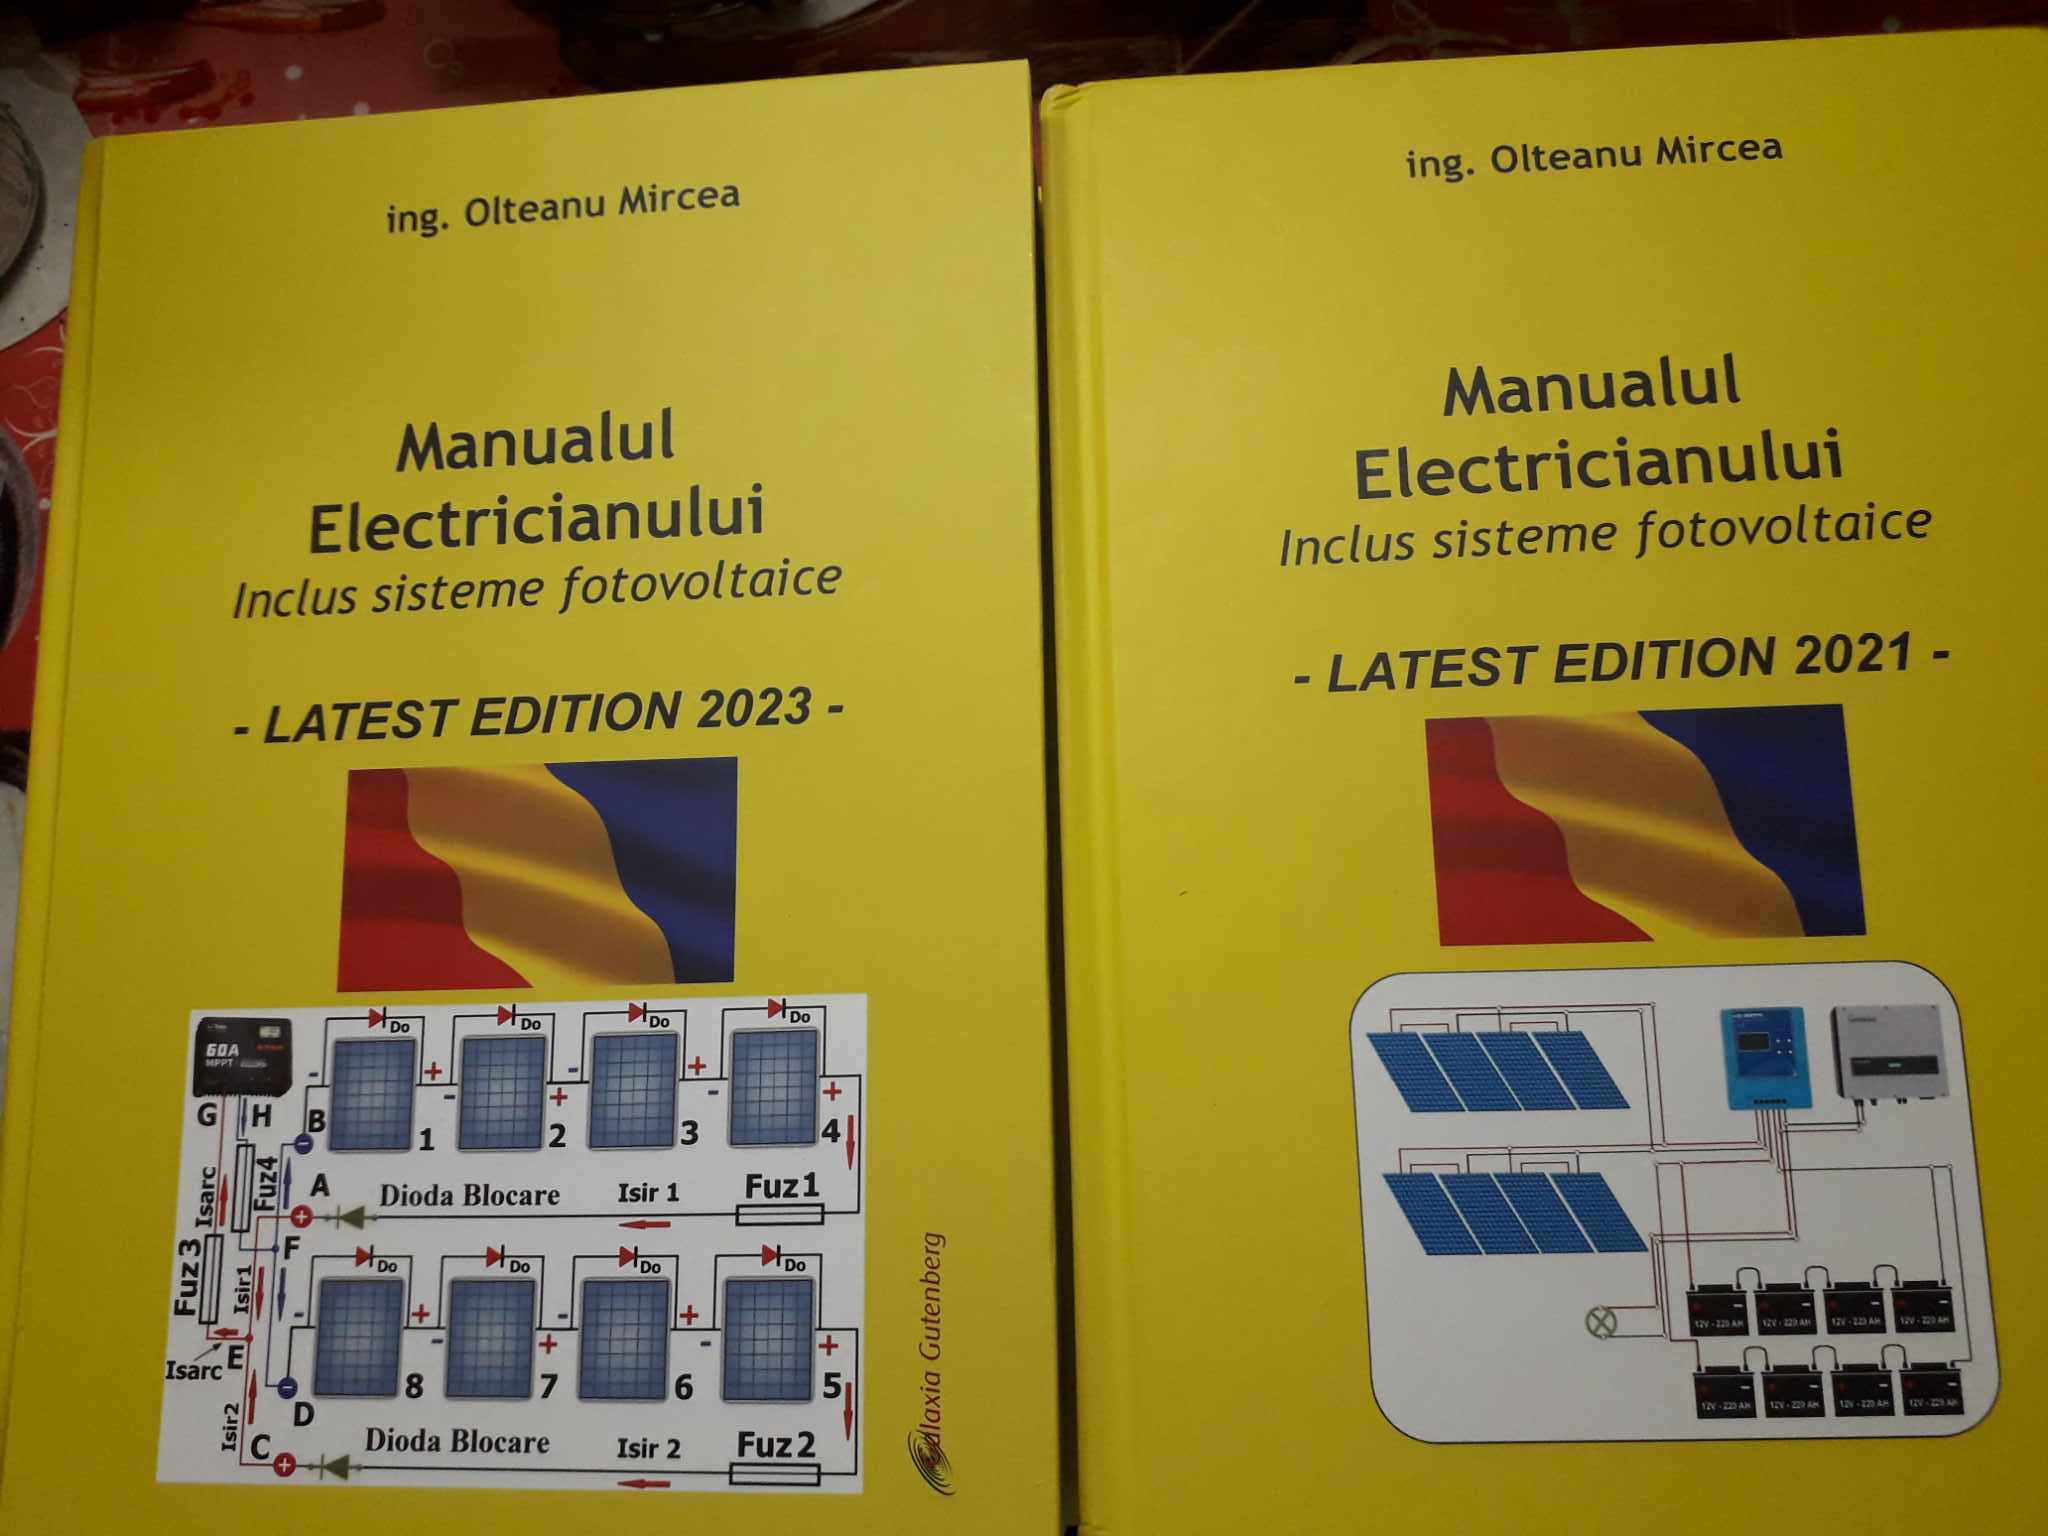 Manualul Electricianului 2021 si cel din 2023.jpg